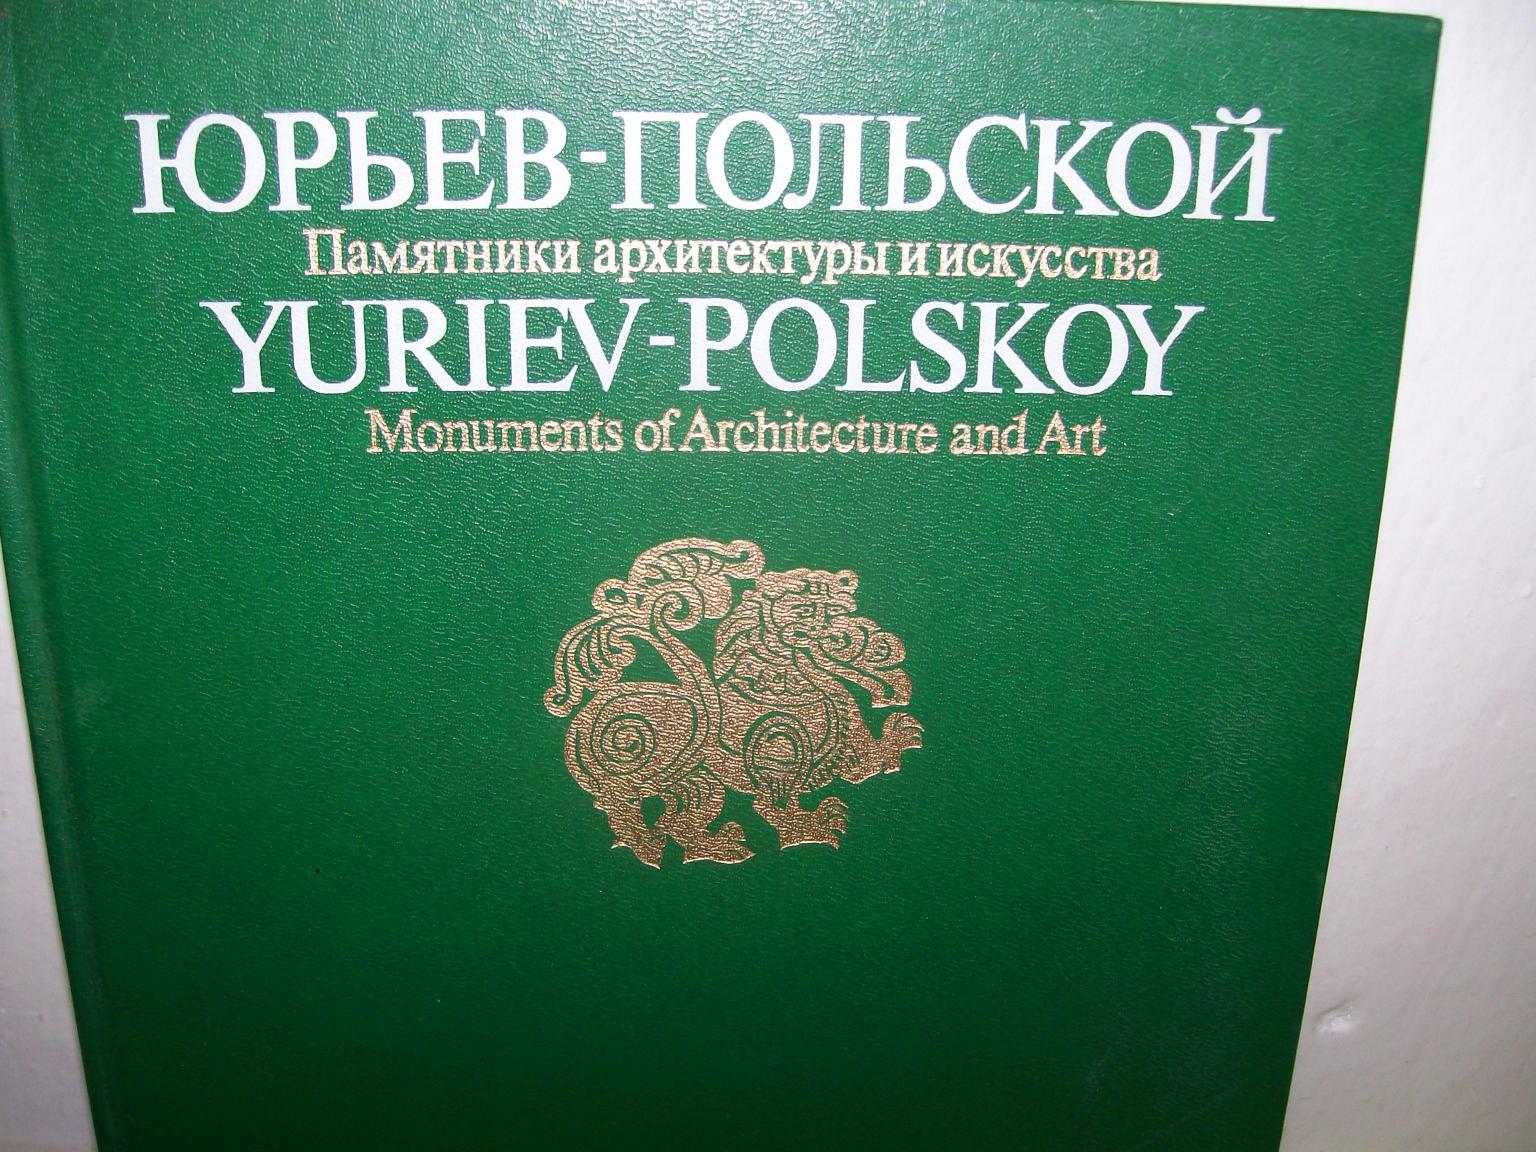 YURIEV-POLSKOY